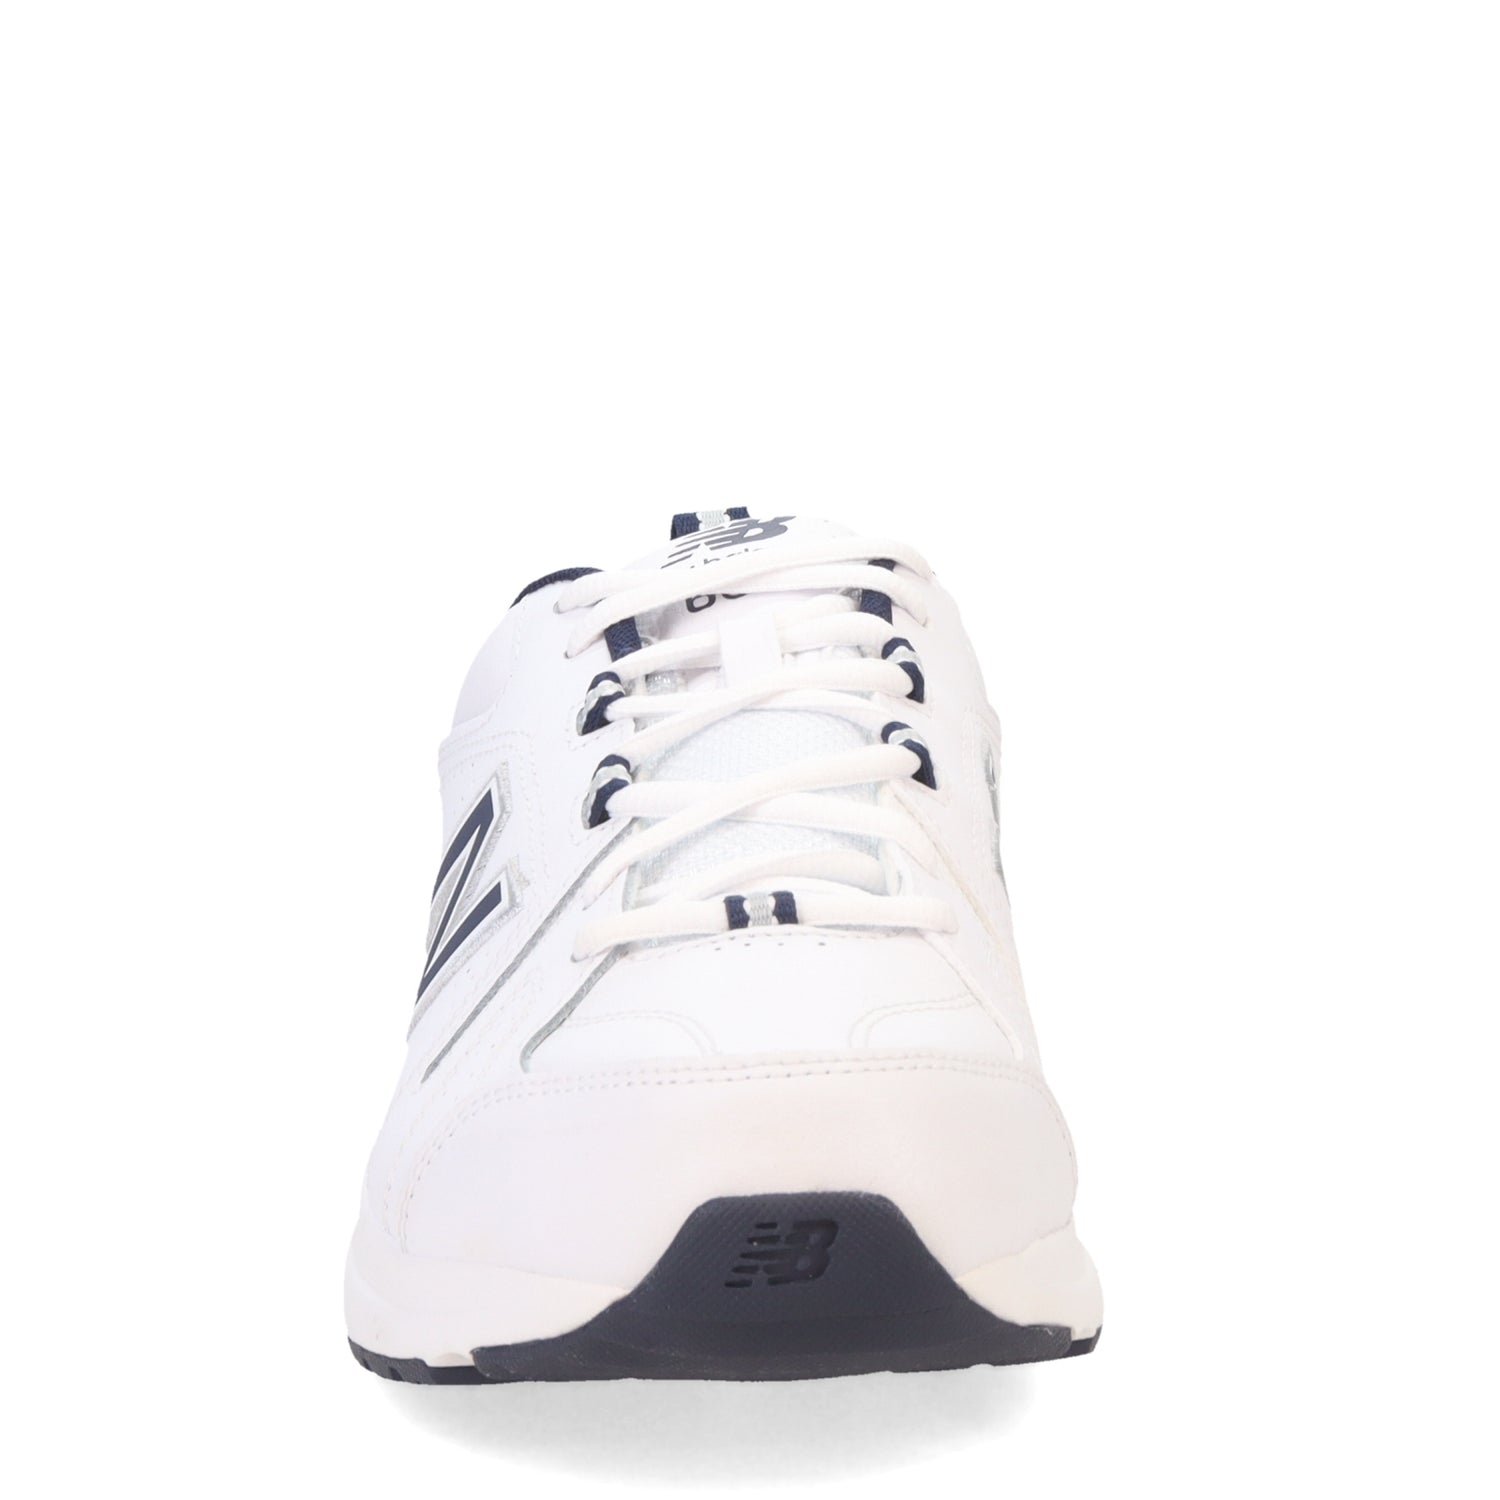 Peltz Shoes  Men's New Balance 608V5 Crosstraining Sneaker White/Navy MX608WN5